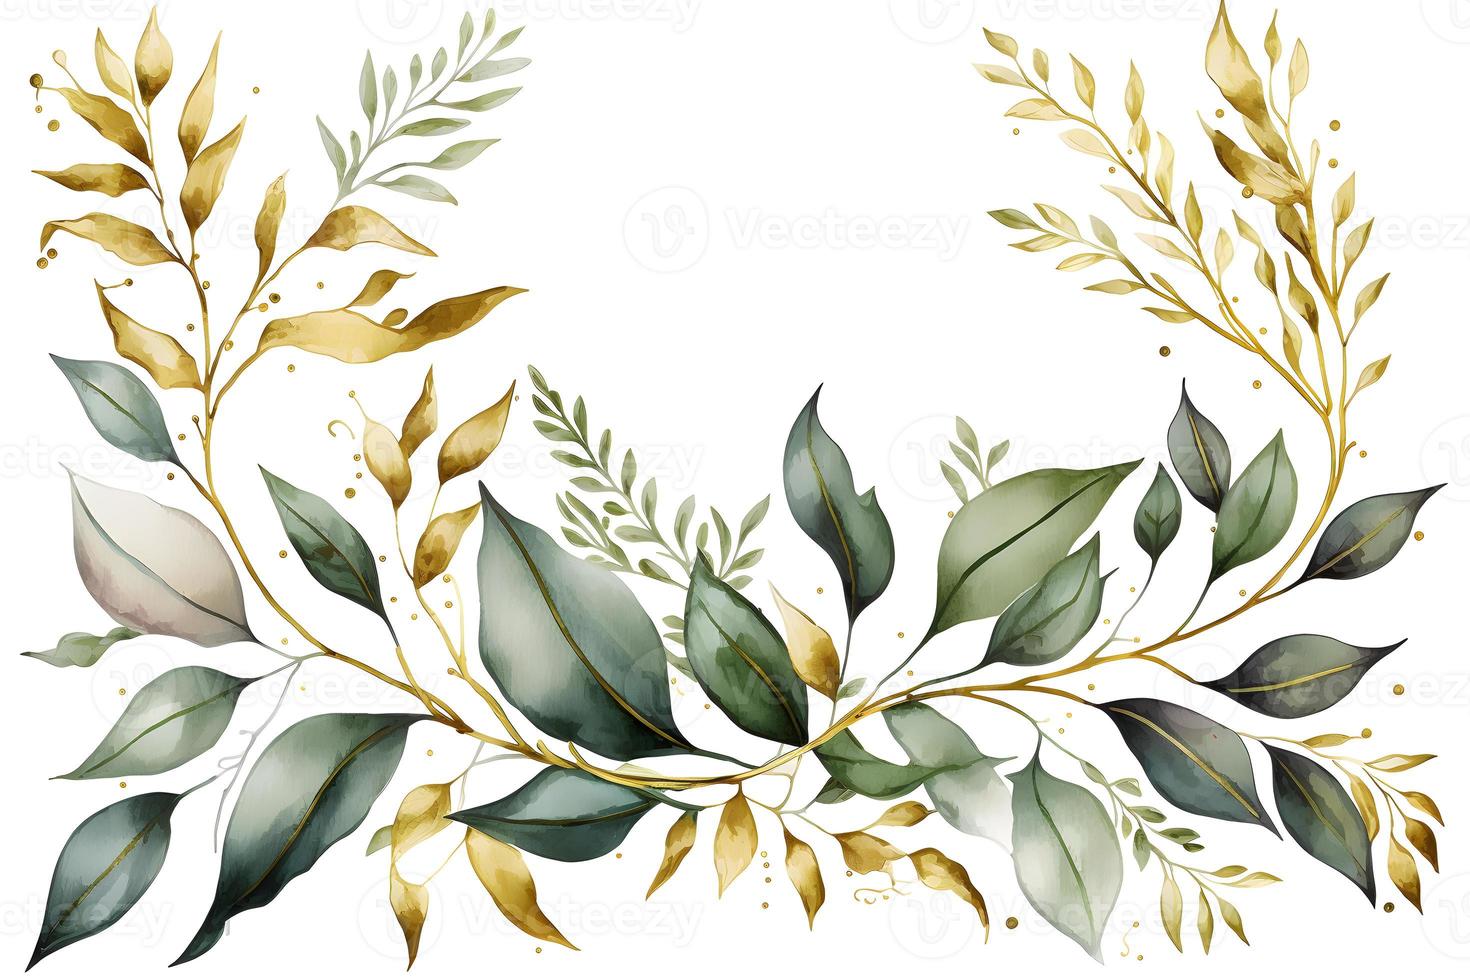 Aquarell nahtlos Rand mit Grün Gold Blätter und Geäst, zum Hochzeit stationär, Grüße, Tapeten, Hintergrund foto